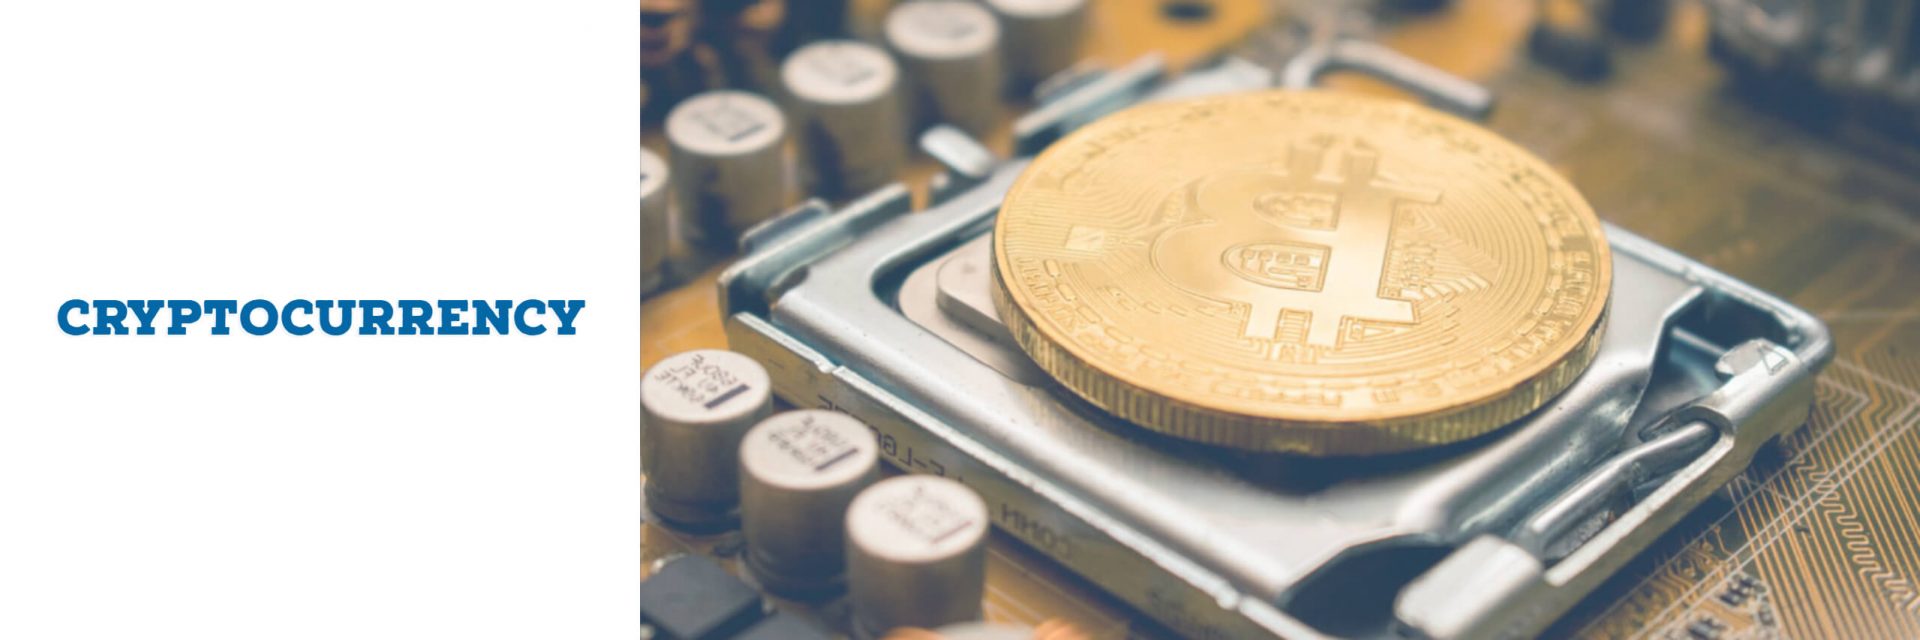 Semejanzas anuales de los precios de Bitcoin notadas por los entusiastas de las criptomonedas